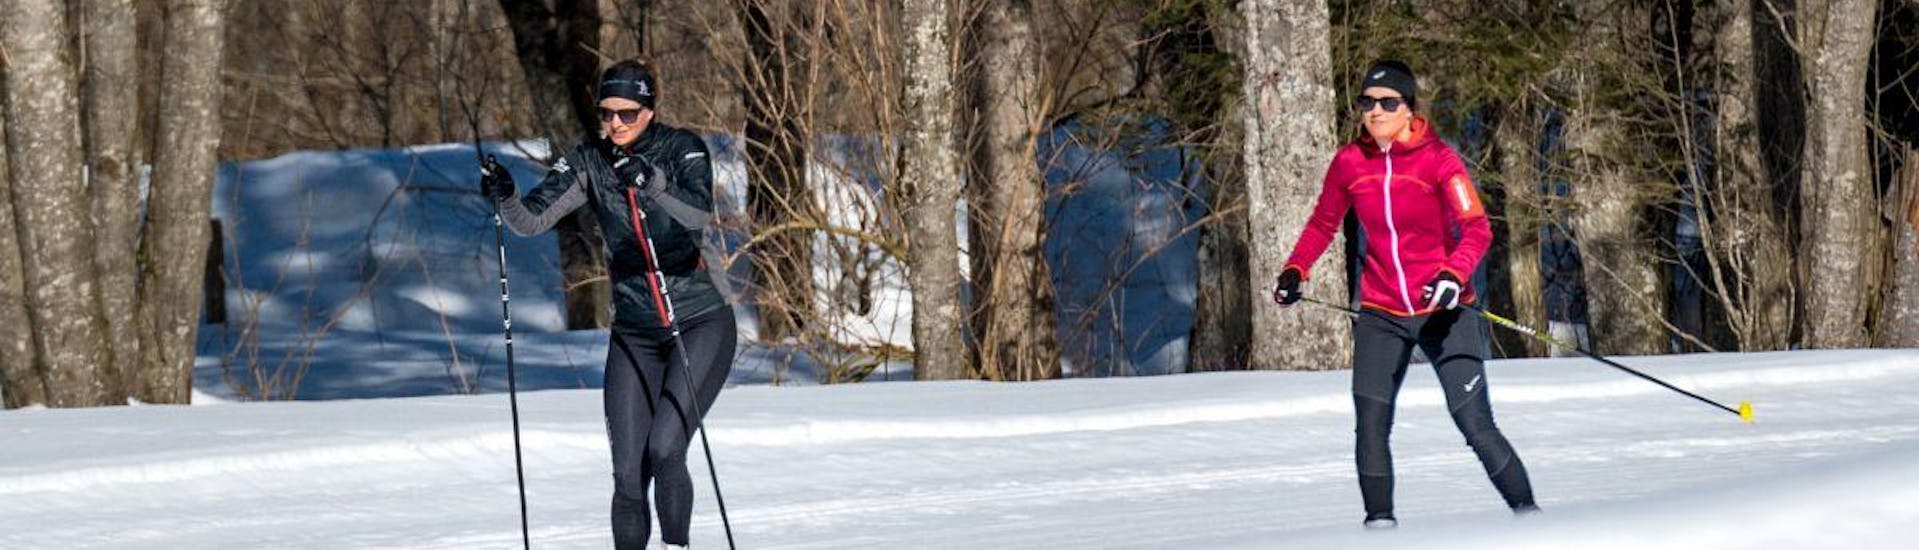 Een langlaufleraar van de Zwitserse skischool Grindelwald toont een jonge vrouw de juiste techniek tijdens een proeflanglaufcursus voor beginners